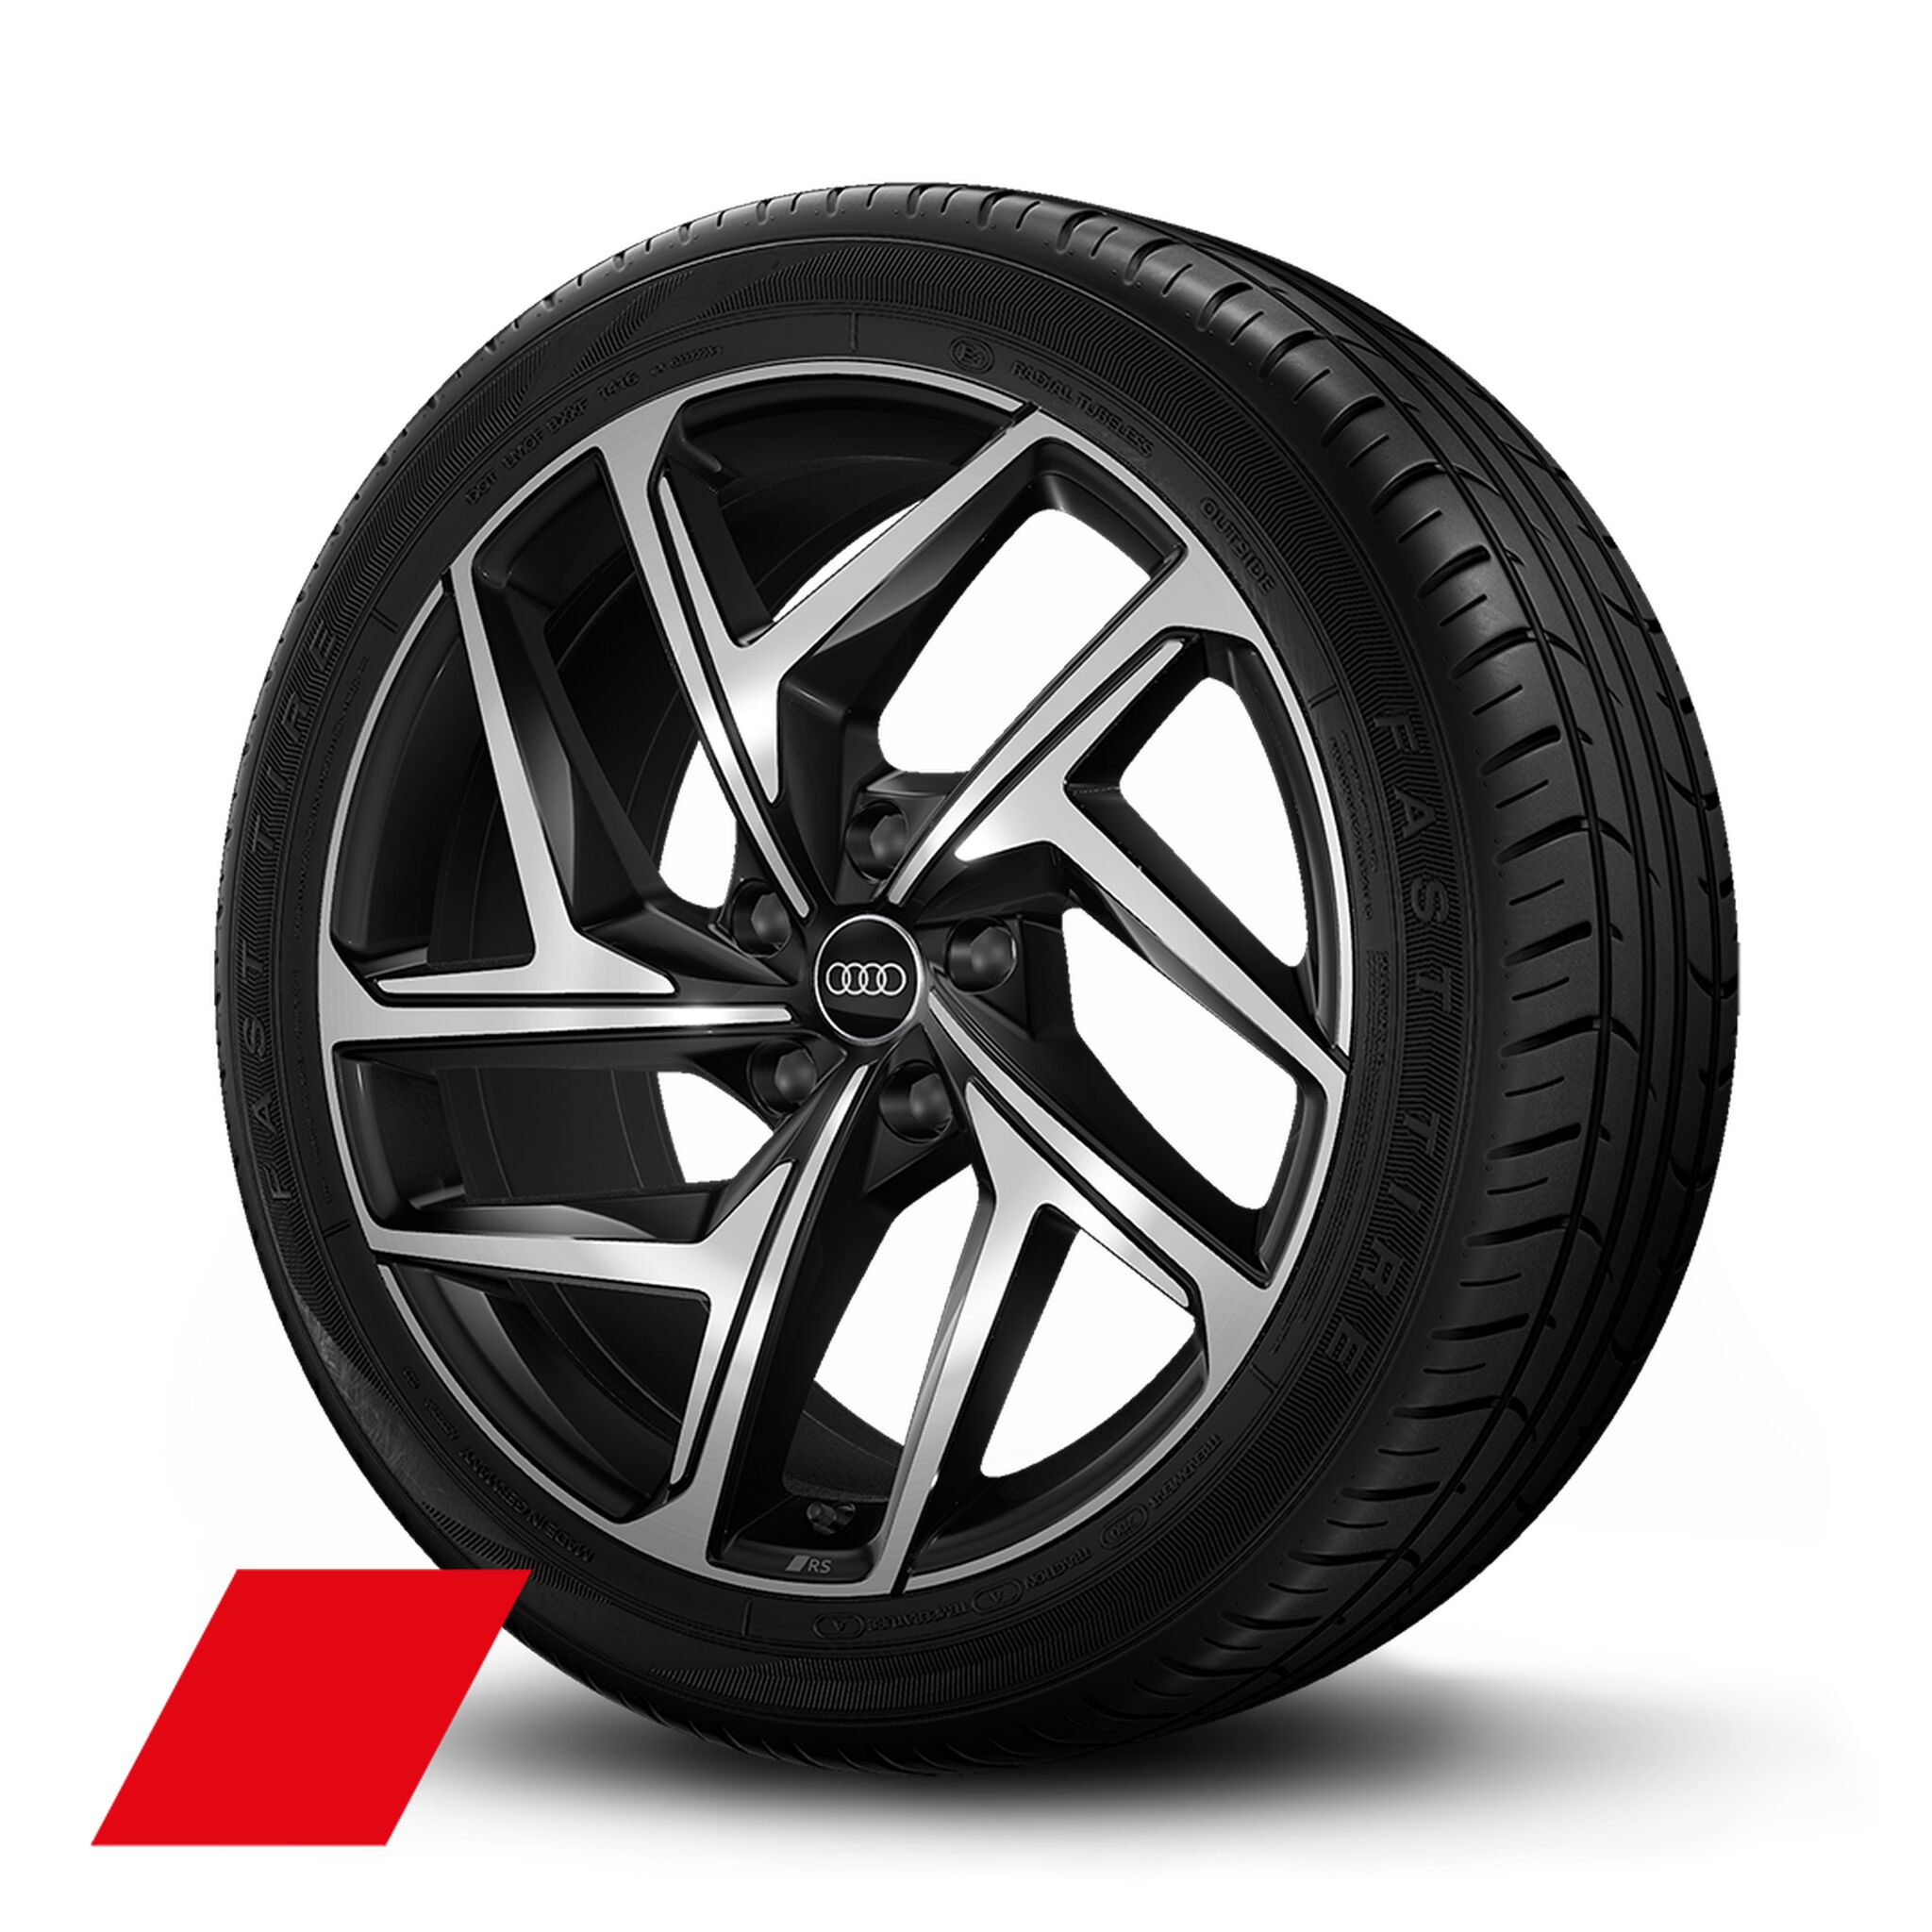 Jantes Audi Sport 5 branches Y dynamiques, noir métallisé, brillant, 9.0J|10.0Jx21, pneus 255/45|285/40 R21